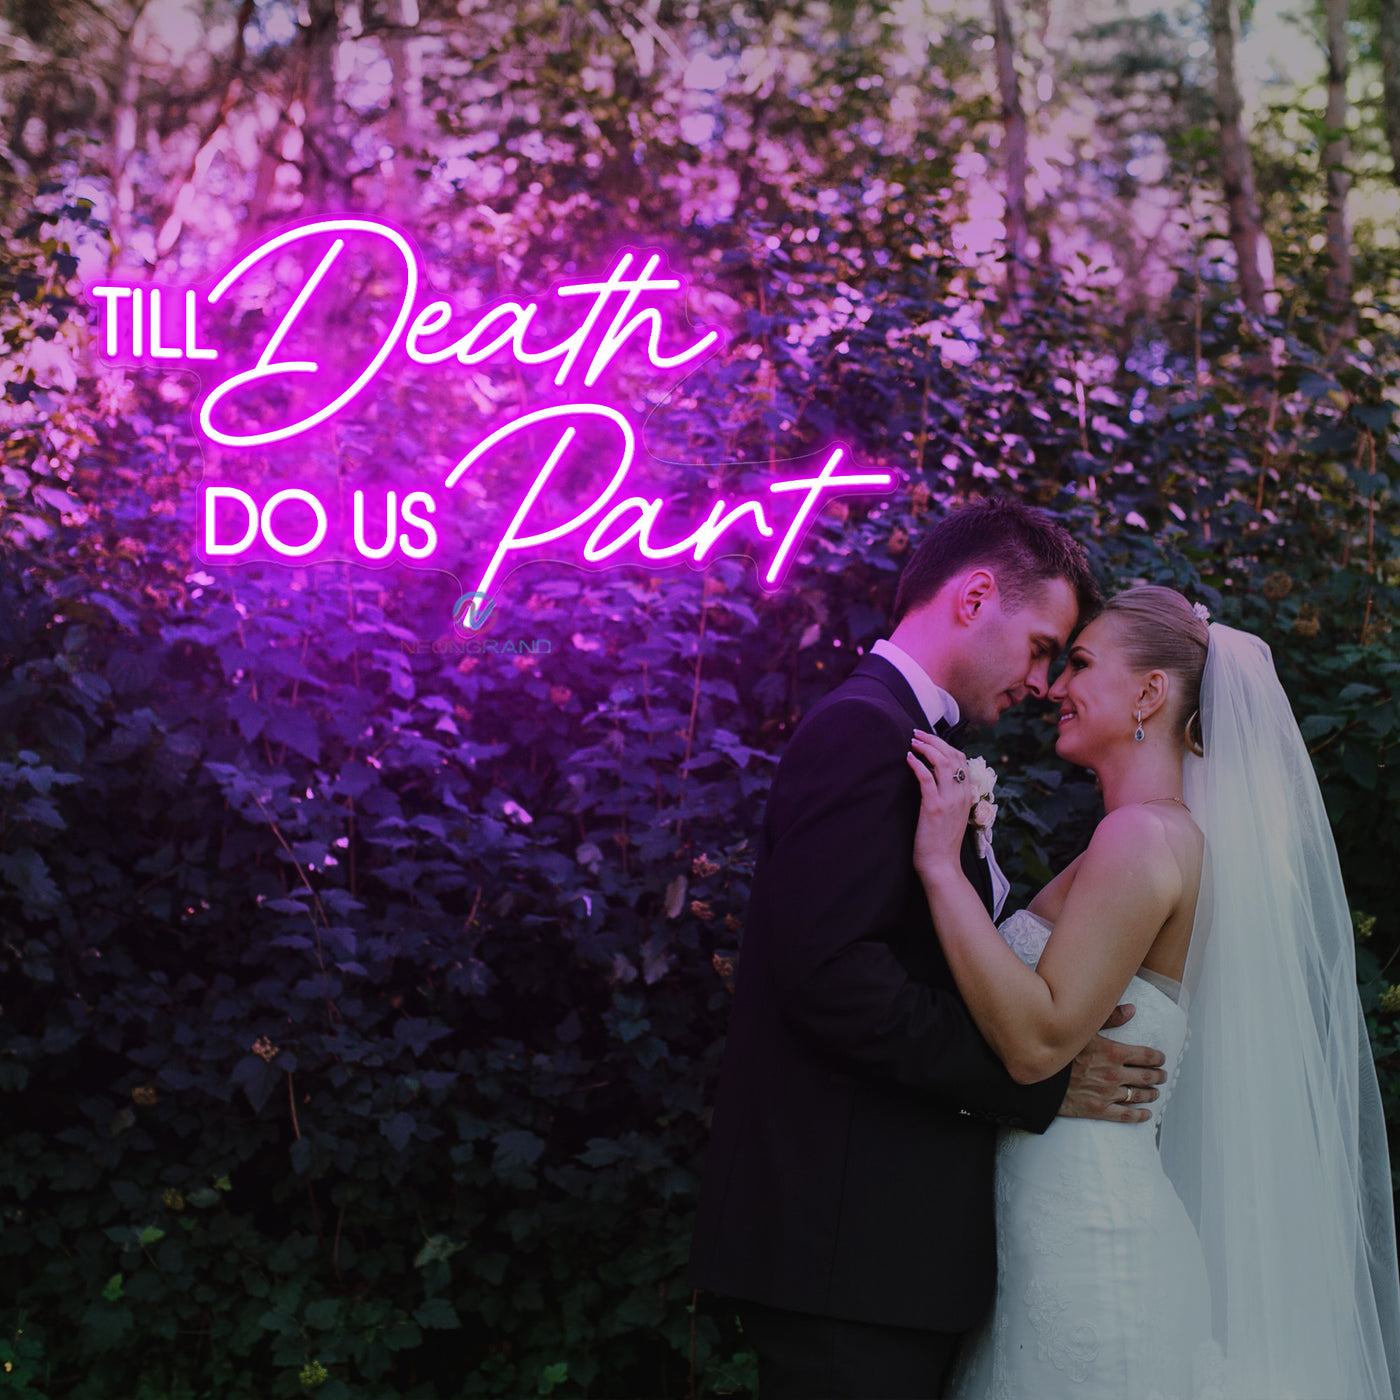 Til Death Do Us Part Neon Sign Wedding Led Light violet